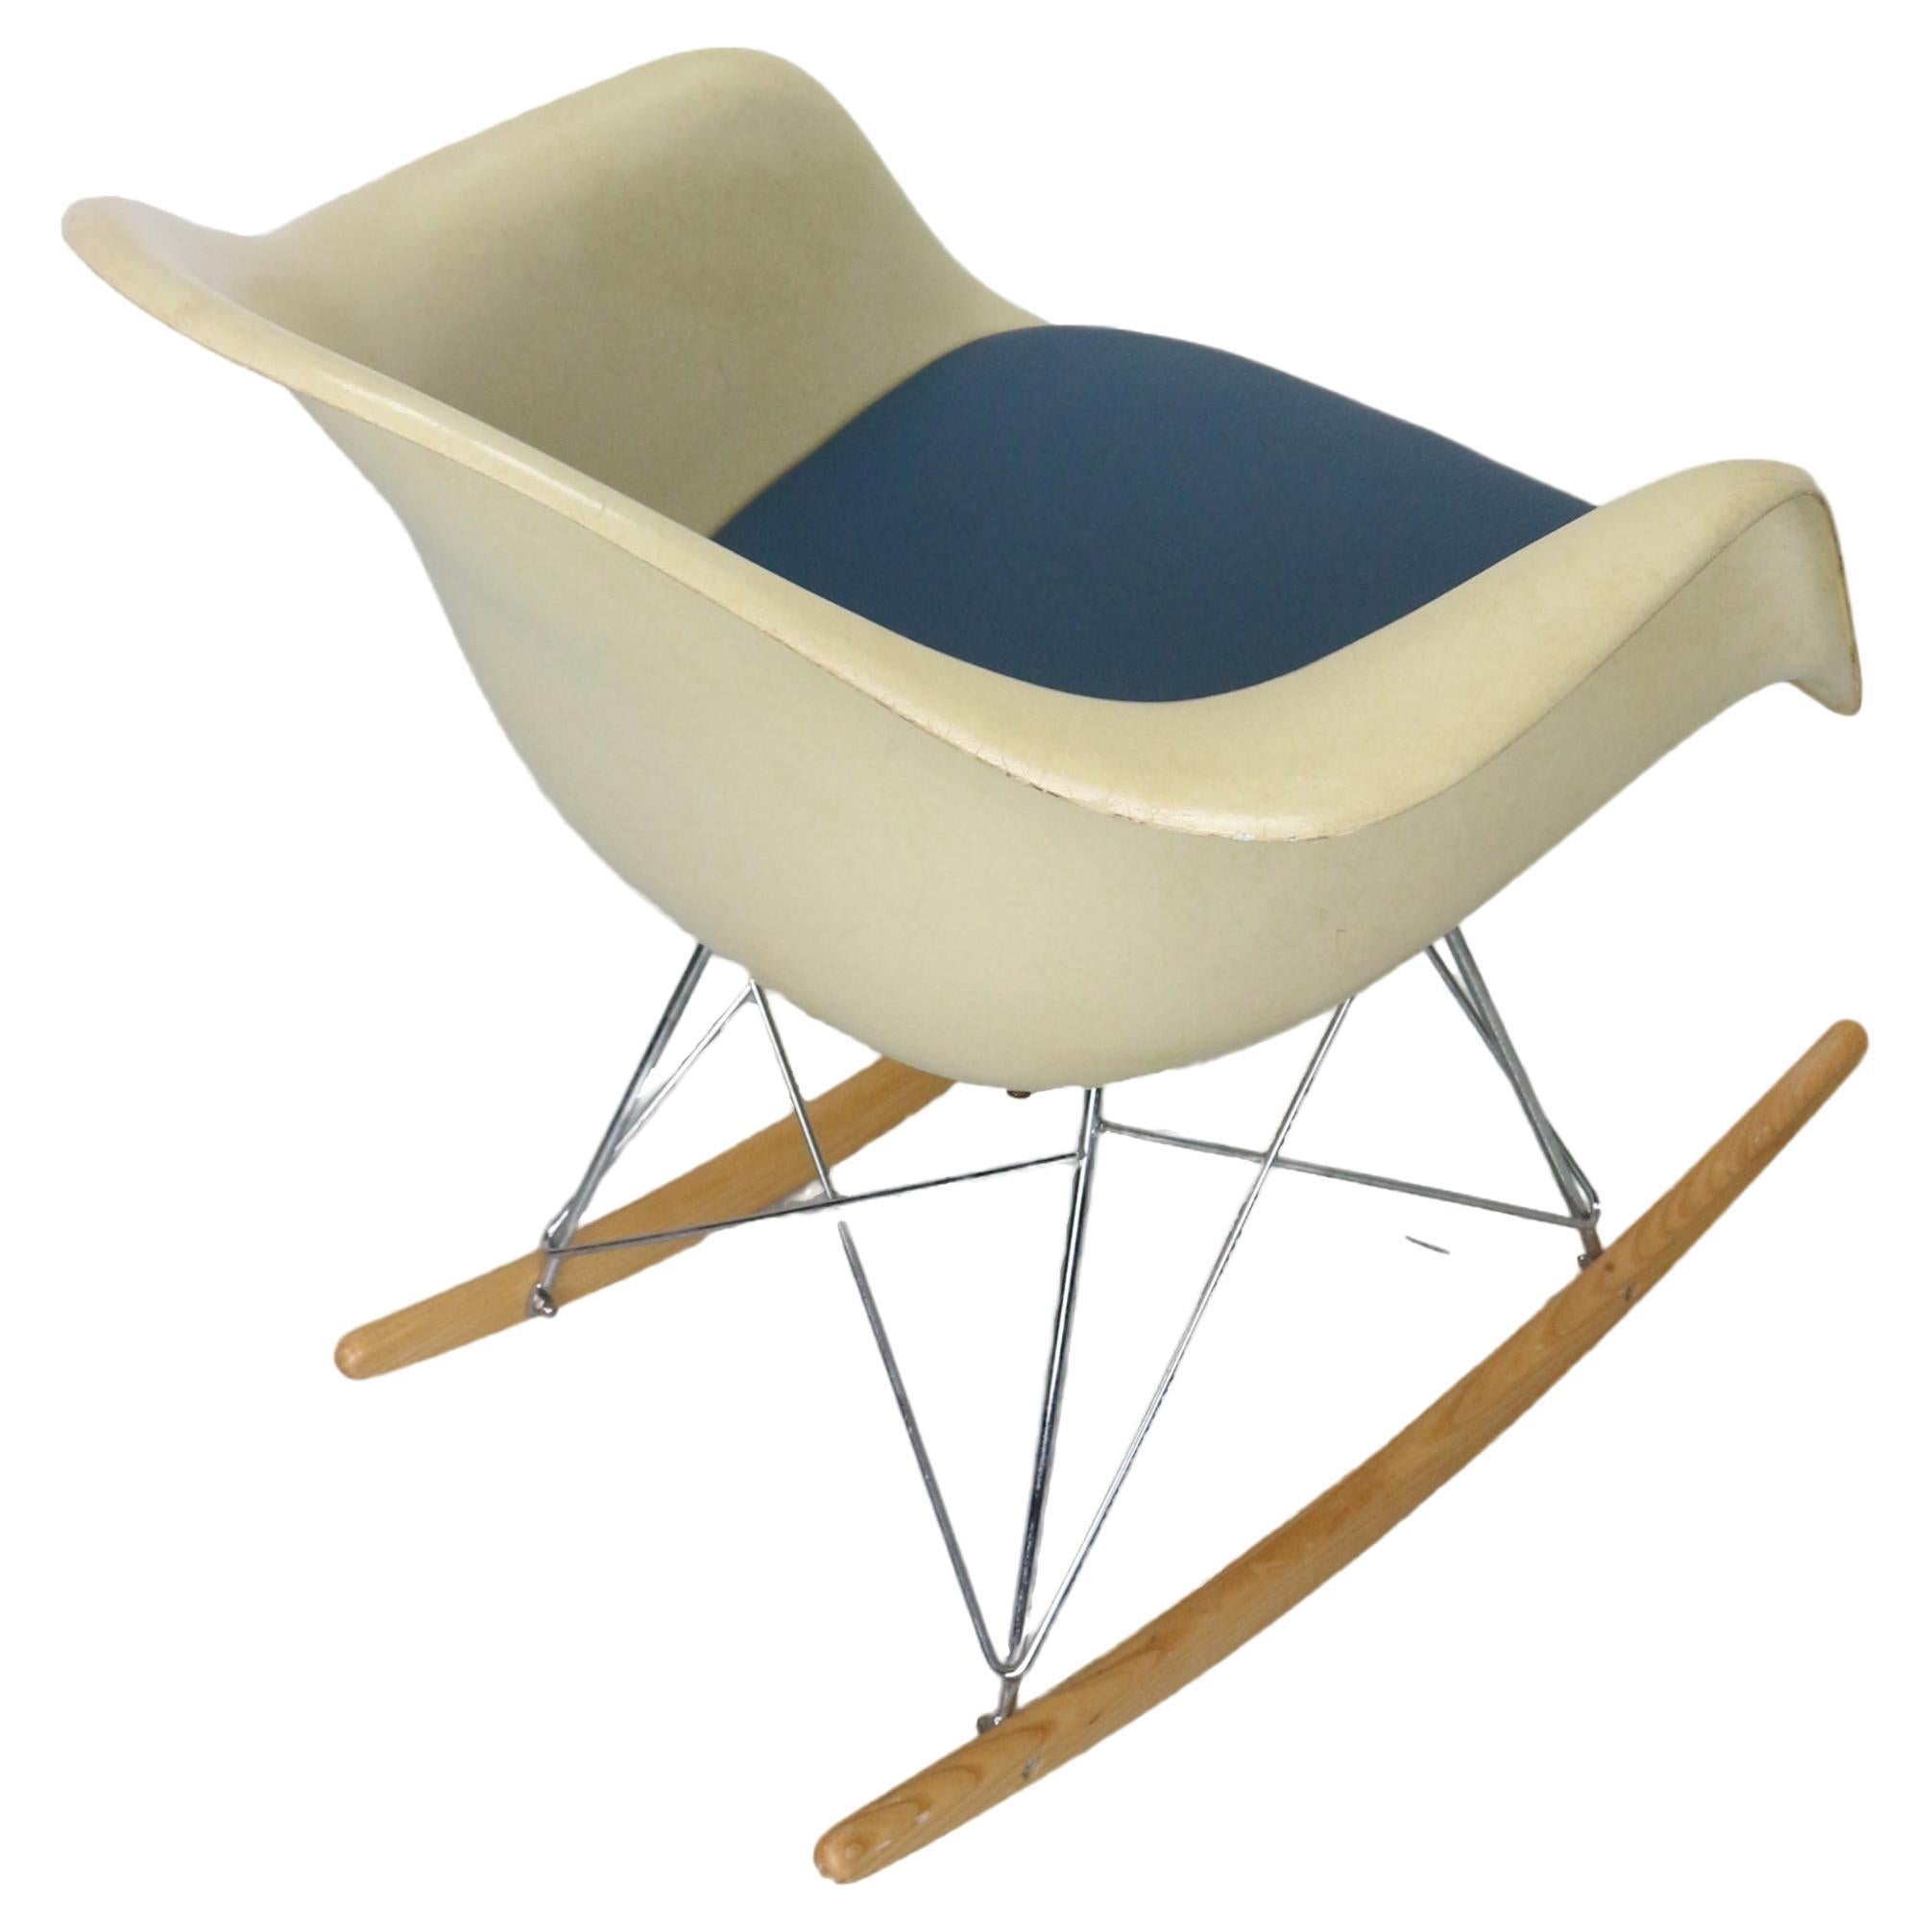 Fauteuil à bascule RAR de Herman Miller en fibre de verre et coque parcheminée par les Eames

Fabriqué dans les années 1960-1970, ce fauteuil à bascule est l'un des modèles les plus emblématiques de Charles et Ray Eames.

Fauteuil à bascule RAR de